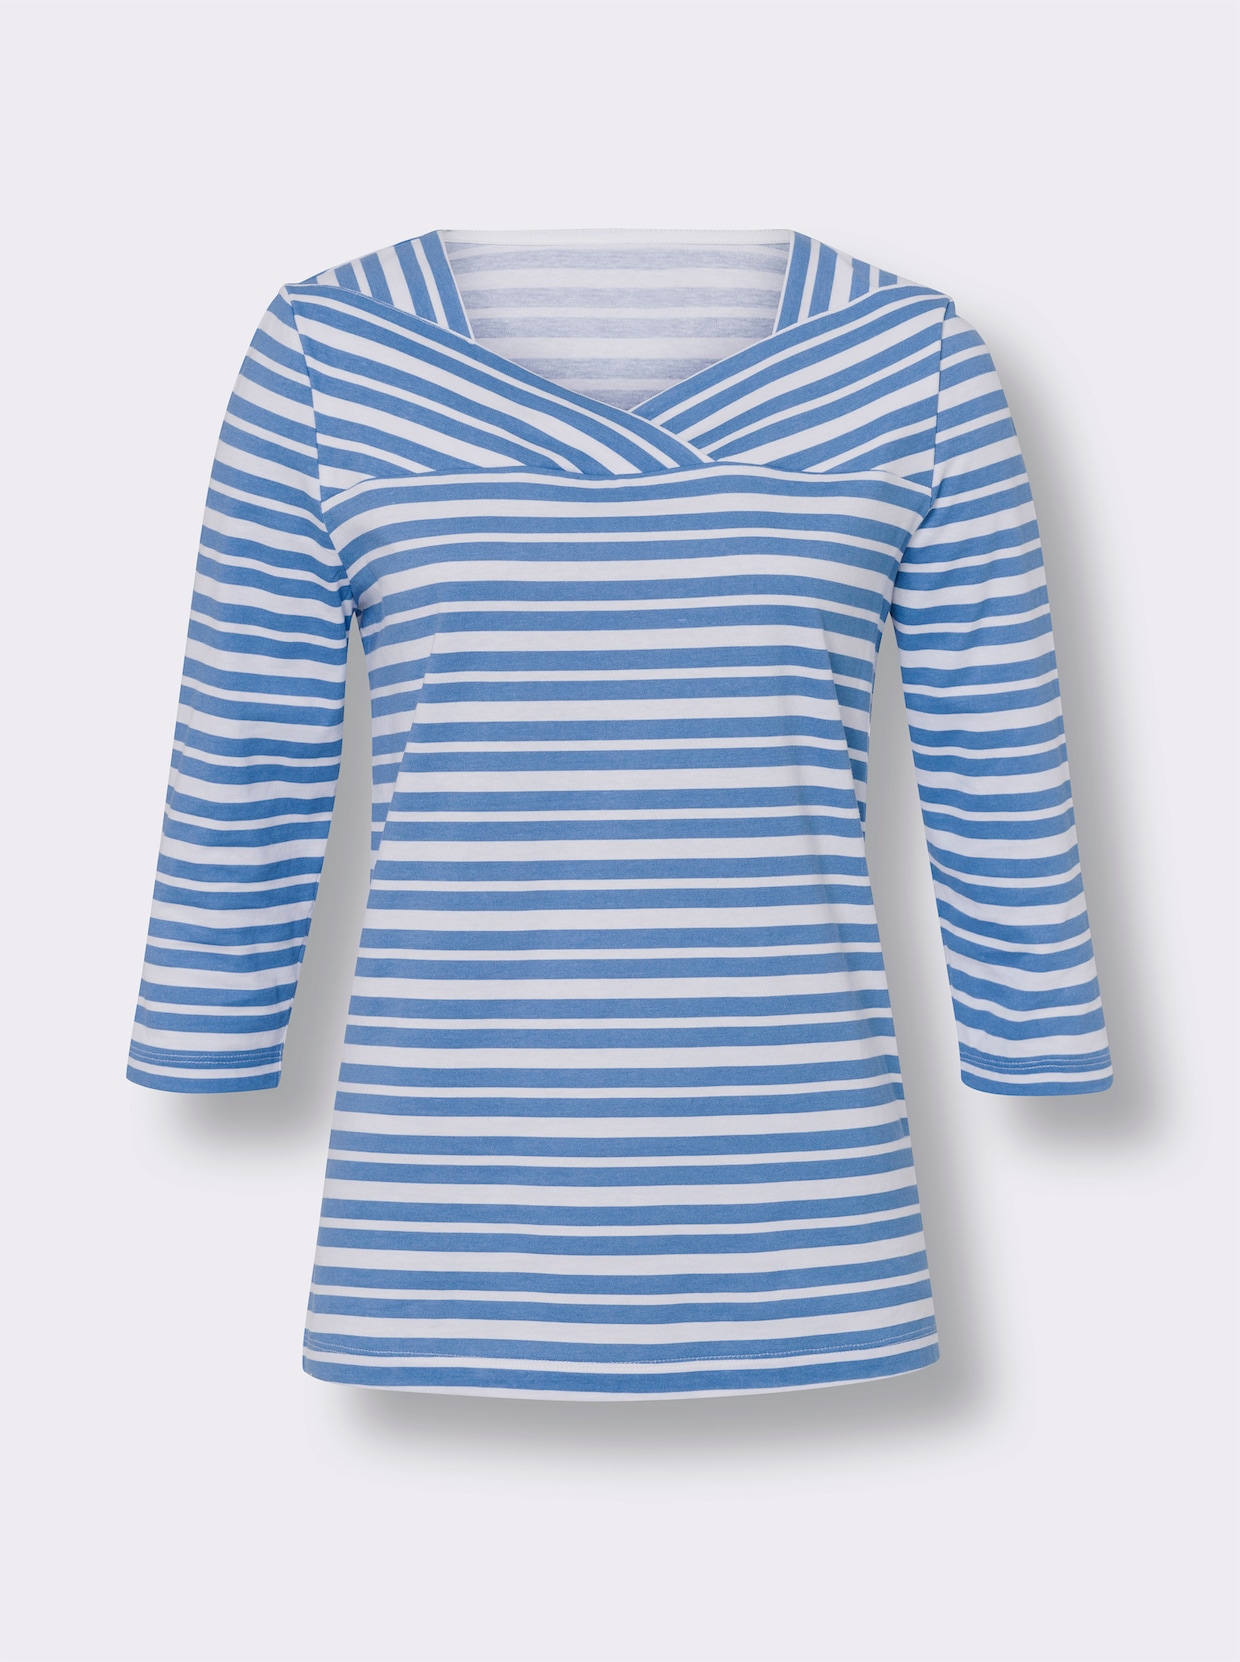 Pruhované tričko - stredne modro-bielo-krúžkované